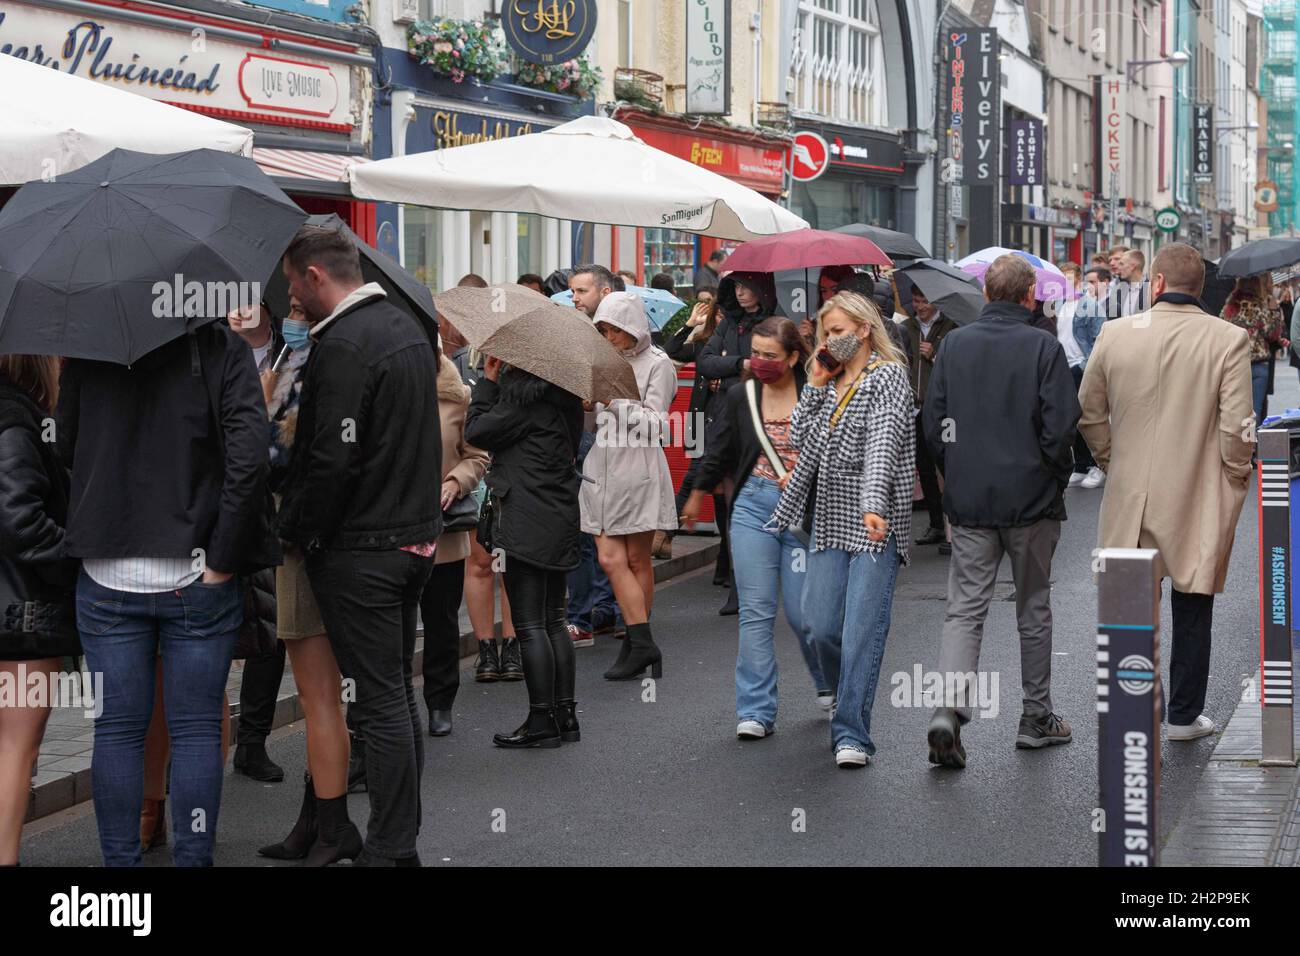 Cork, Irlande, le 23 octobre 2021.Les foules se rendent en ville pour célébrer le week-end de Jazz malgré une douche intense, Cork, Irlande.Les foules dans leurs milliers sont descendues sur Cork City aujourd'hui malgré de fortes prévisions de pluie tout au long de la journée pour profiter de l'atmosphère électrique du Guinness Cork Jazz Festival, de loin l'un des plus grands week-ends de la ville chaque année,cette année, les restrictions ont été assouplies, ce qui a permis à la fois aux parieurs et aux lieux de la fête de la fin de semaine.De longues files d'attente ont été observées à l'extérieur de nombreux sites dans toute la ville malgré la forte pluie et le vent dans l'espoir d'obtenir une table pour t Banque D'Images